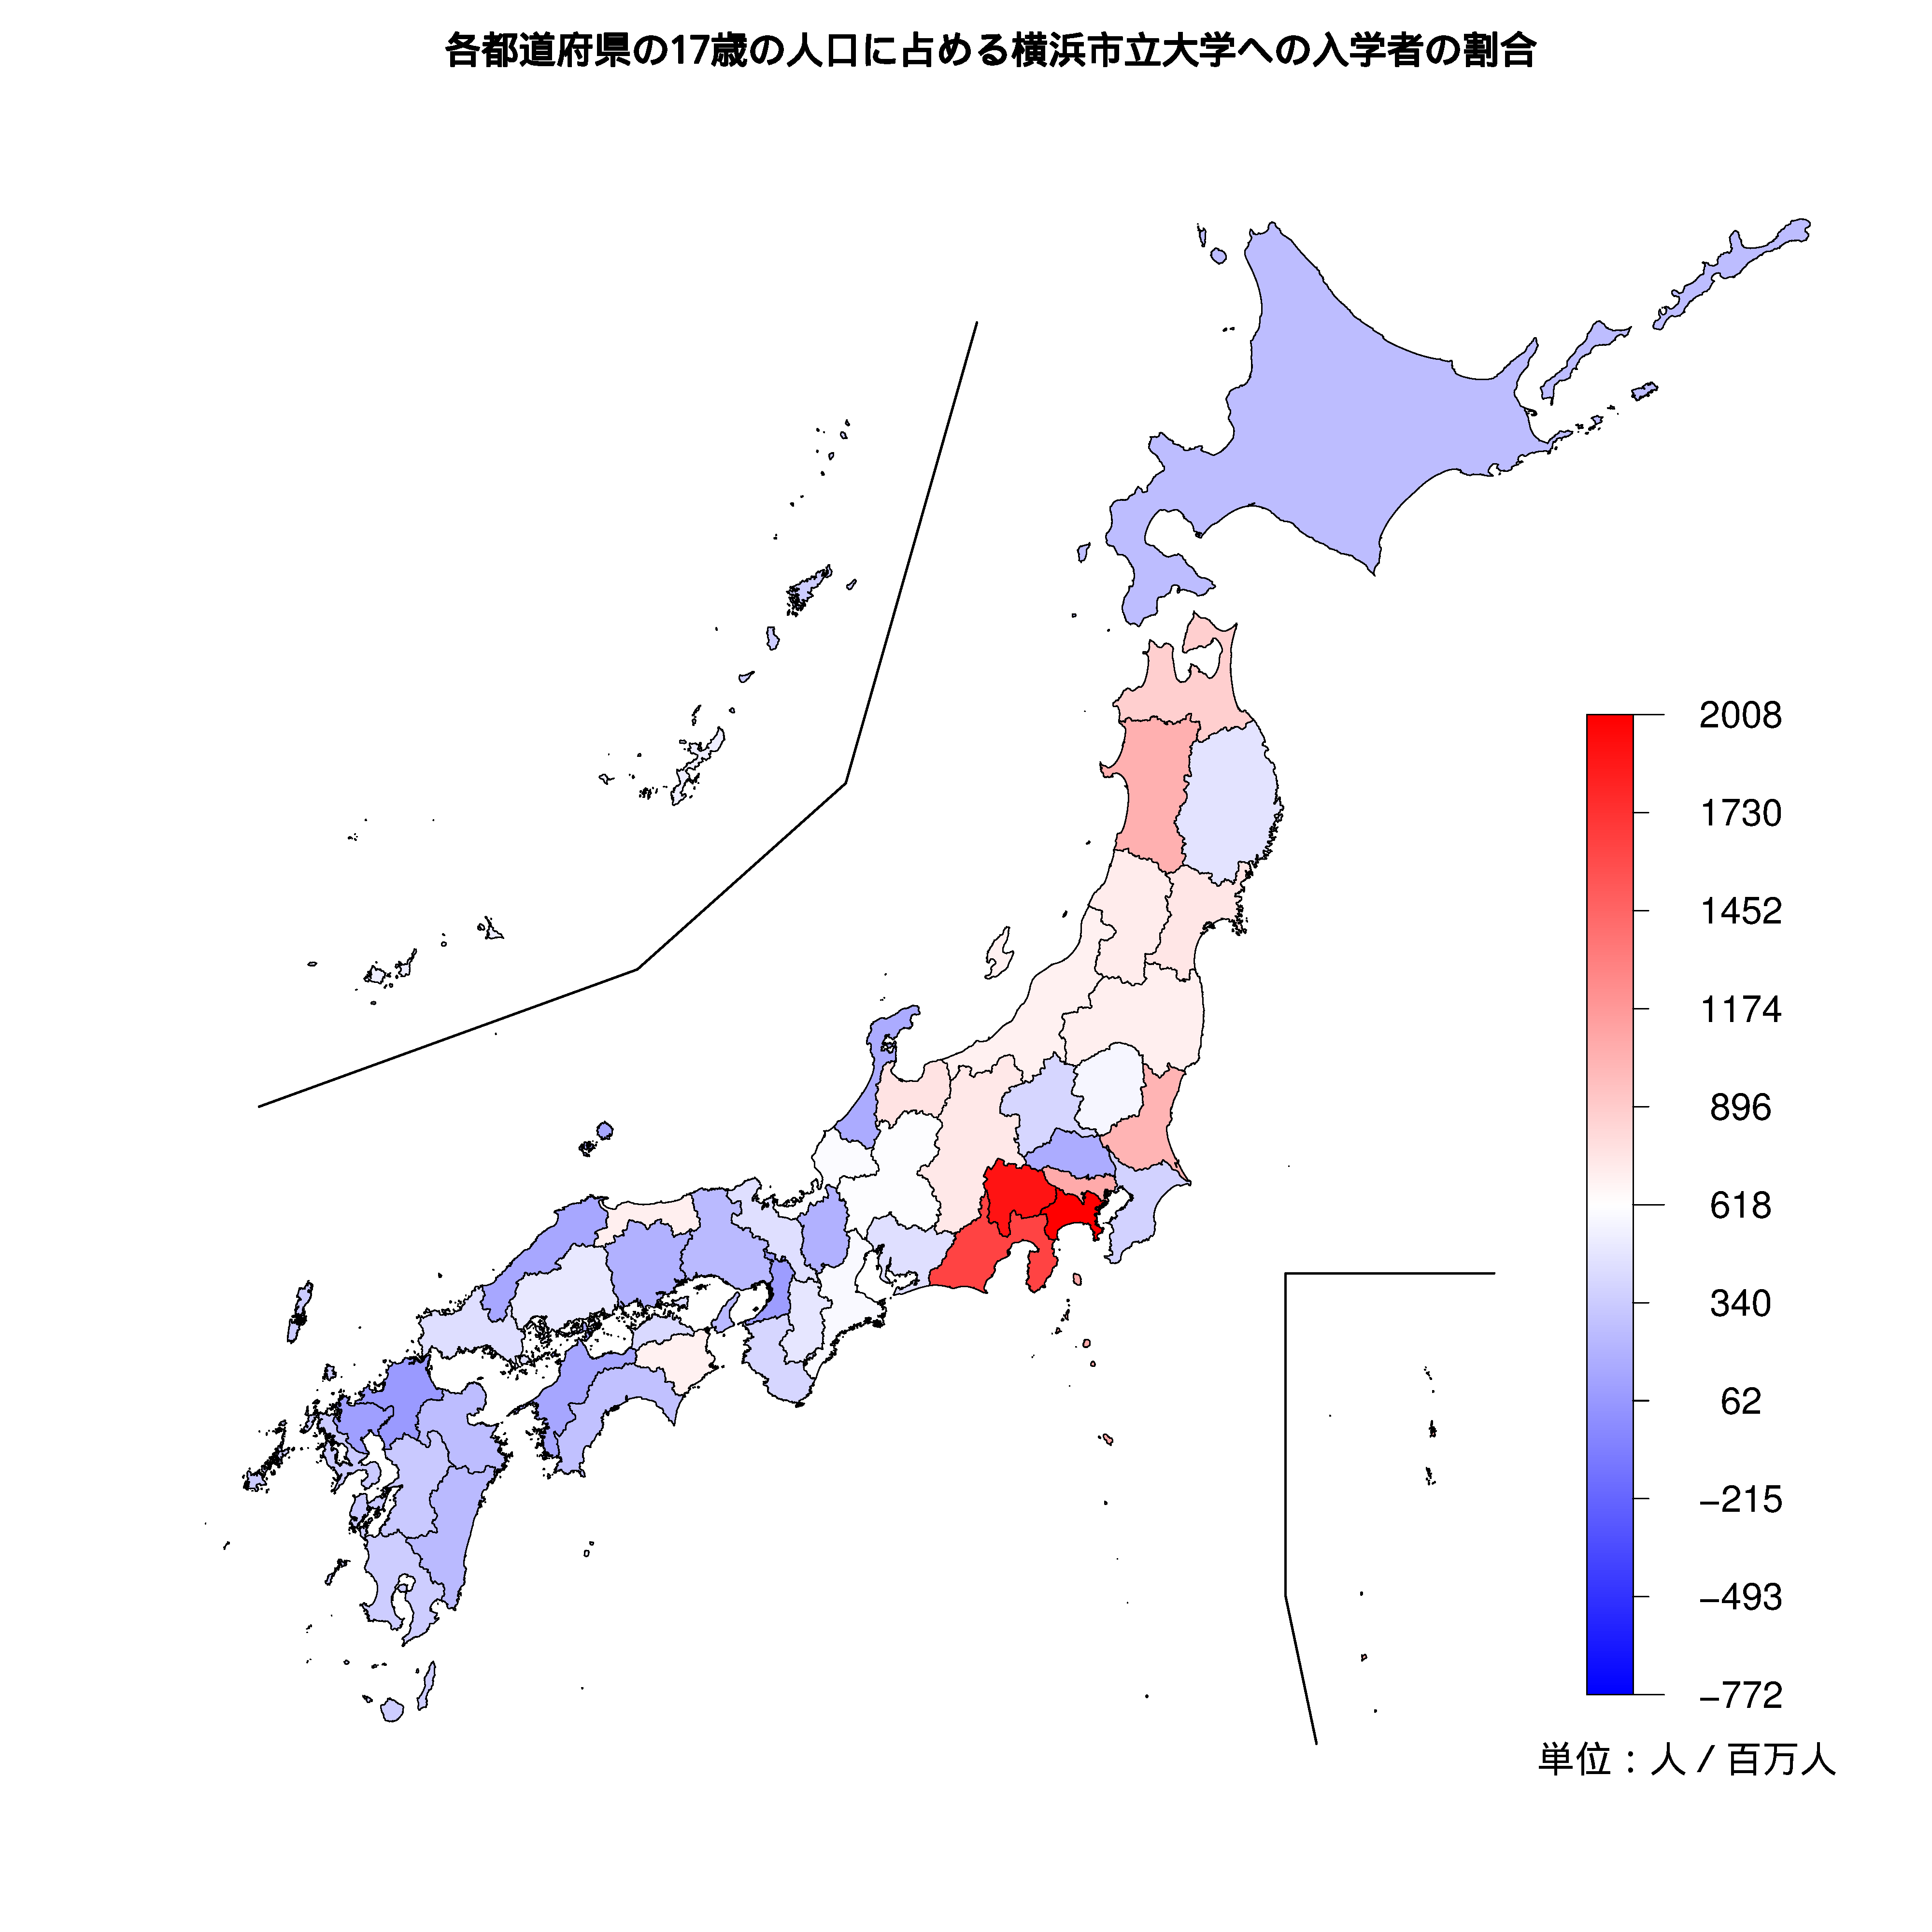 横浜市立大学への入学者が多い都道府県の色分け地図